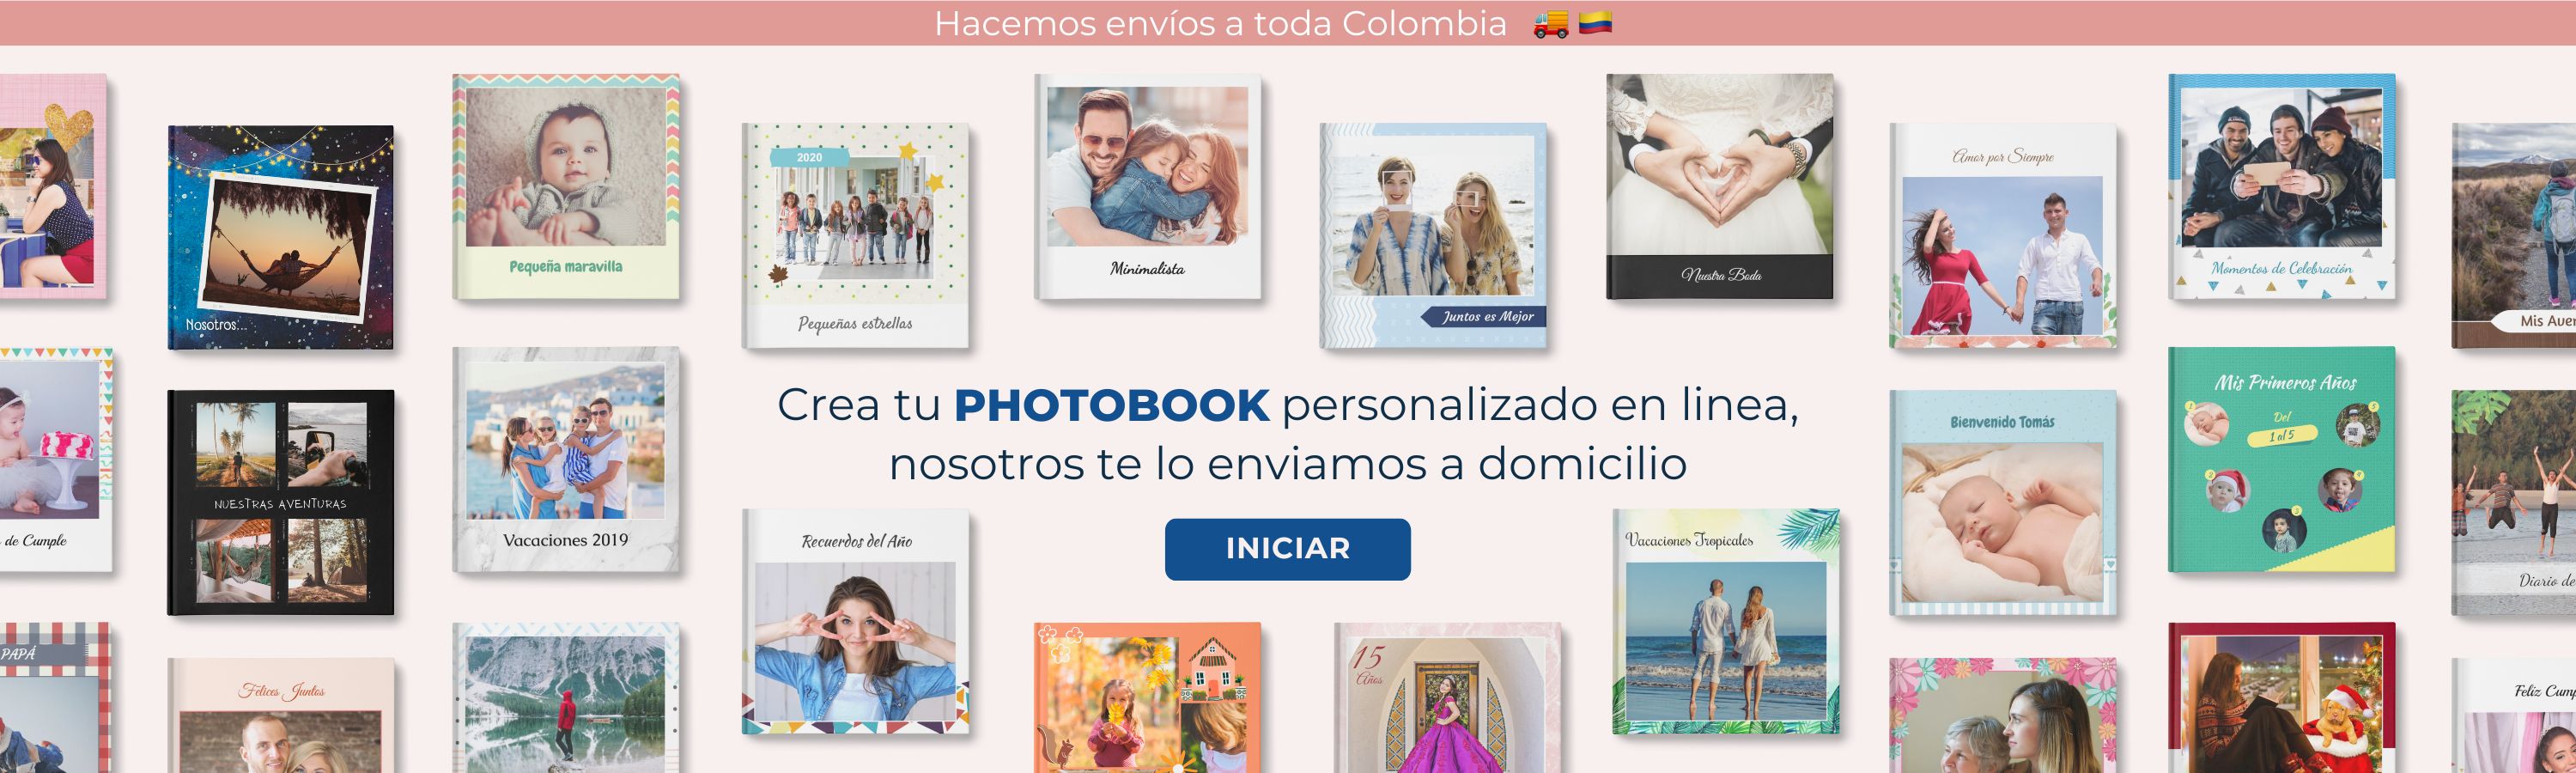 Photobook - Album de fotos personalizados en Bogotá, Colombia